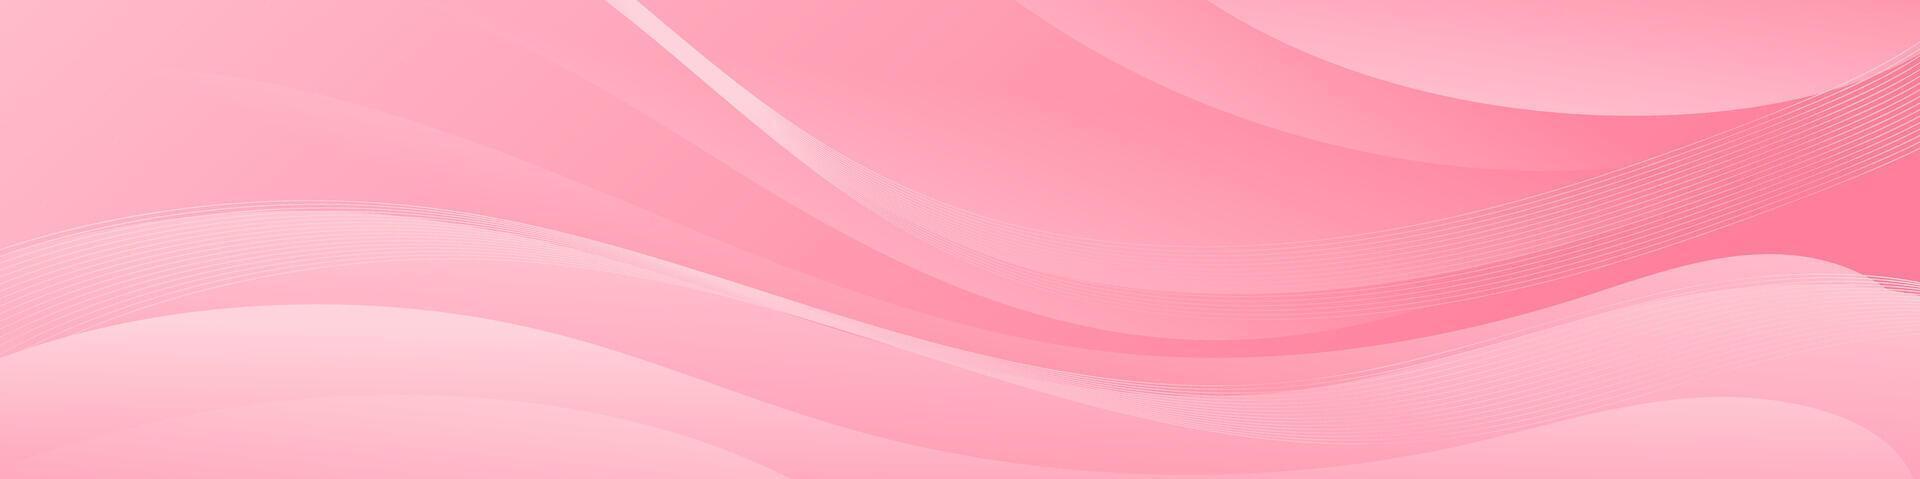 abstrakt rosa baner Färg med en unik vågig design. den är idealisk för skapande öga fångst rubriker, PR banderoller, och grafisk element med en modern och dynamisk se. vektor